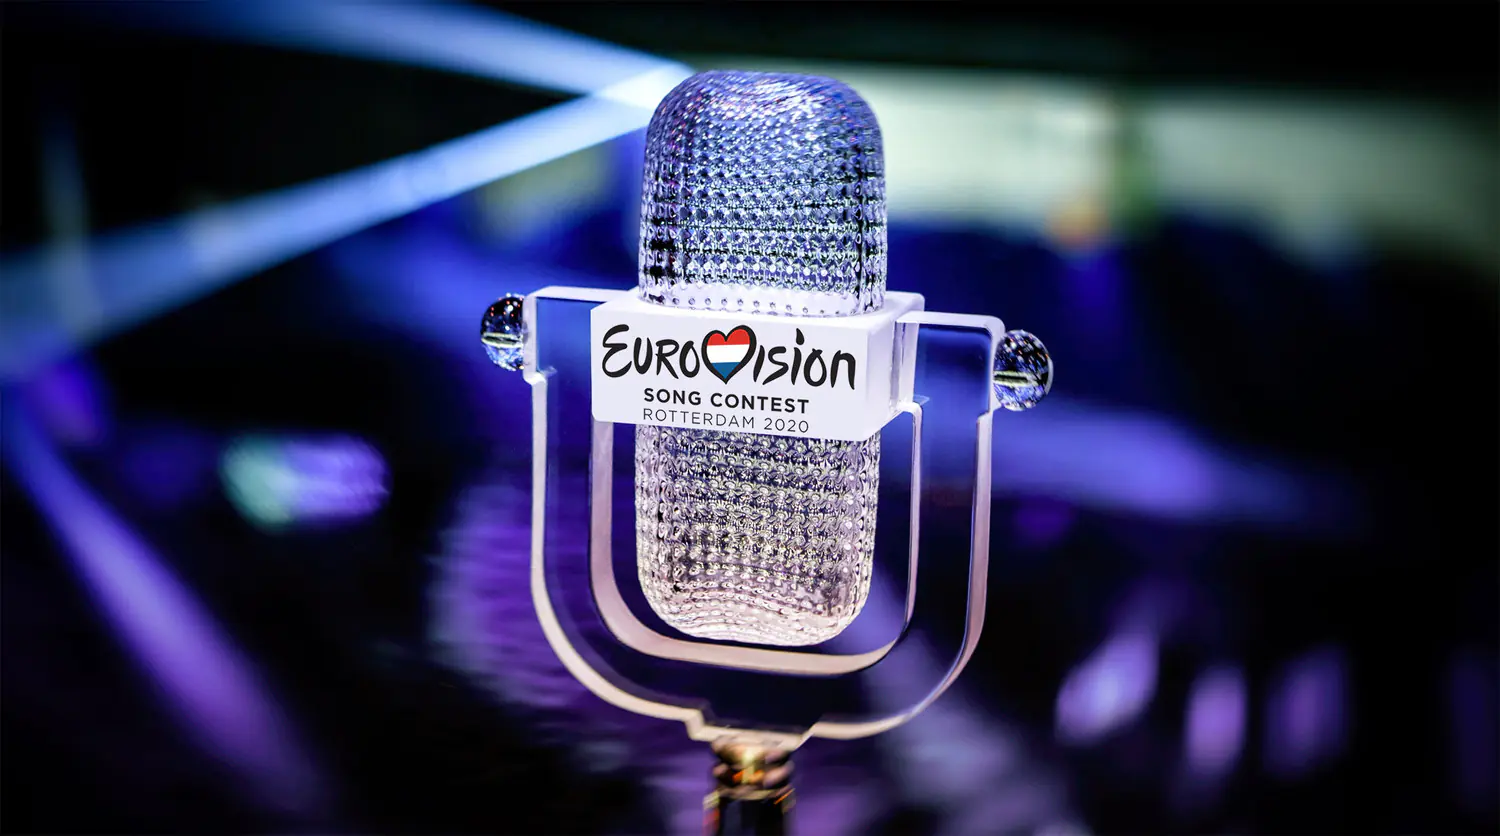 Официально подтвержденное место проведения Евровидение 2023